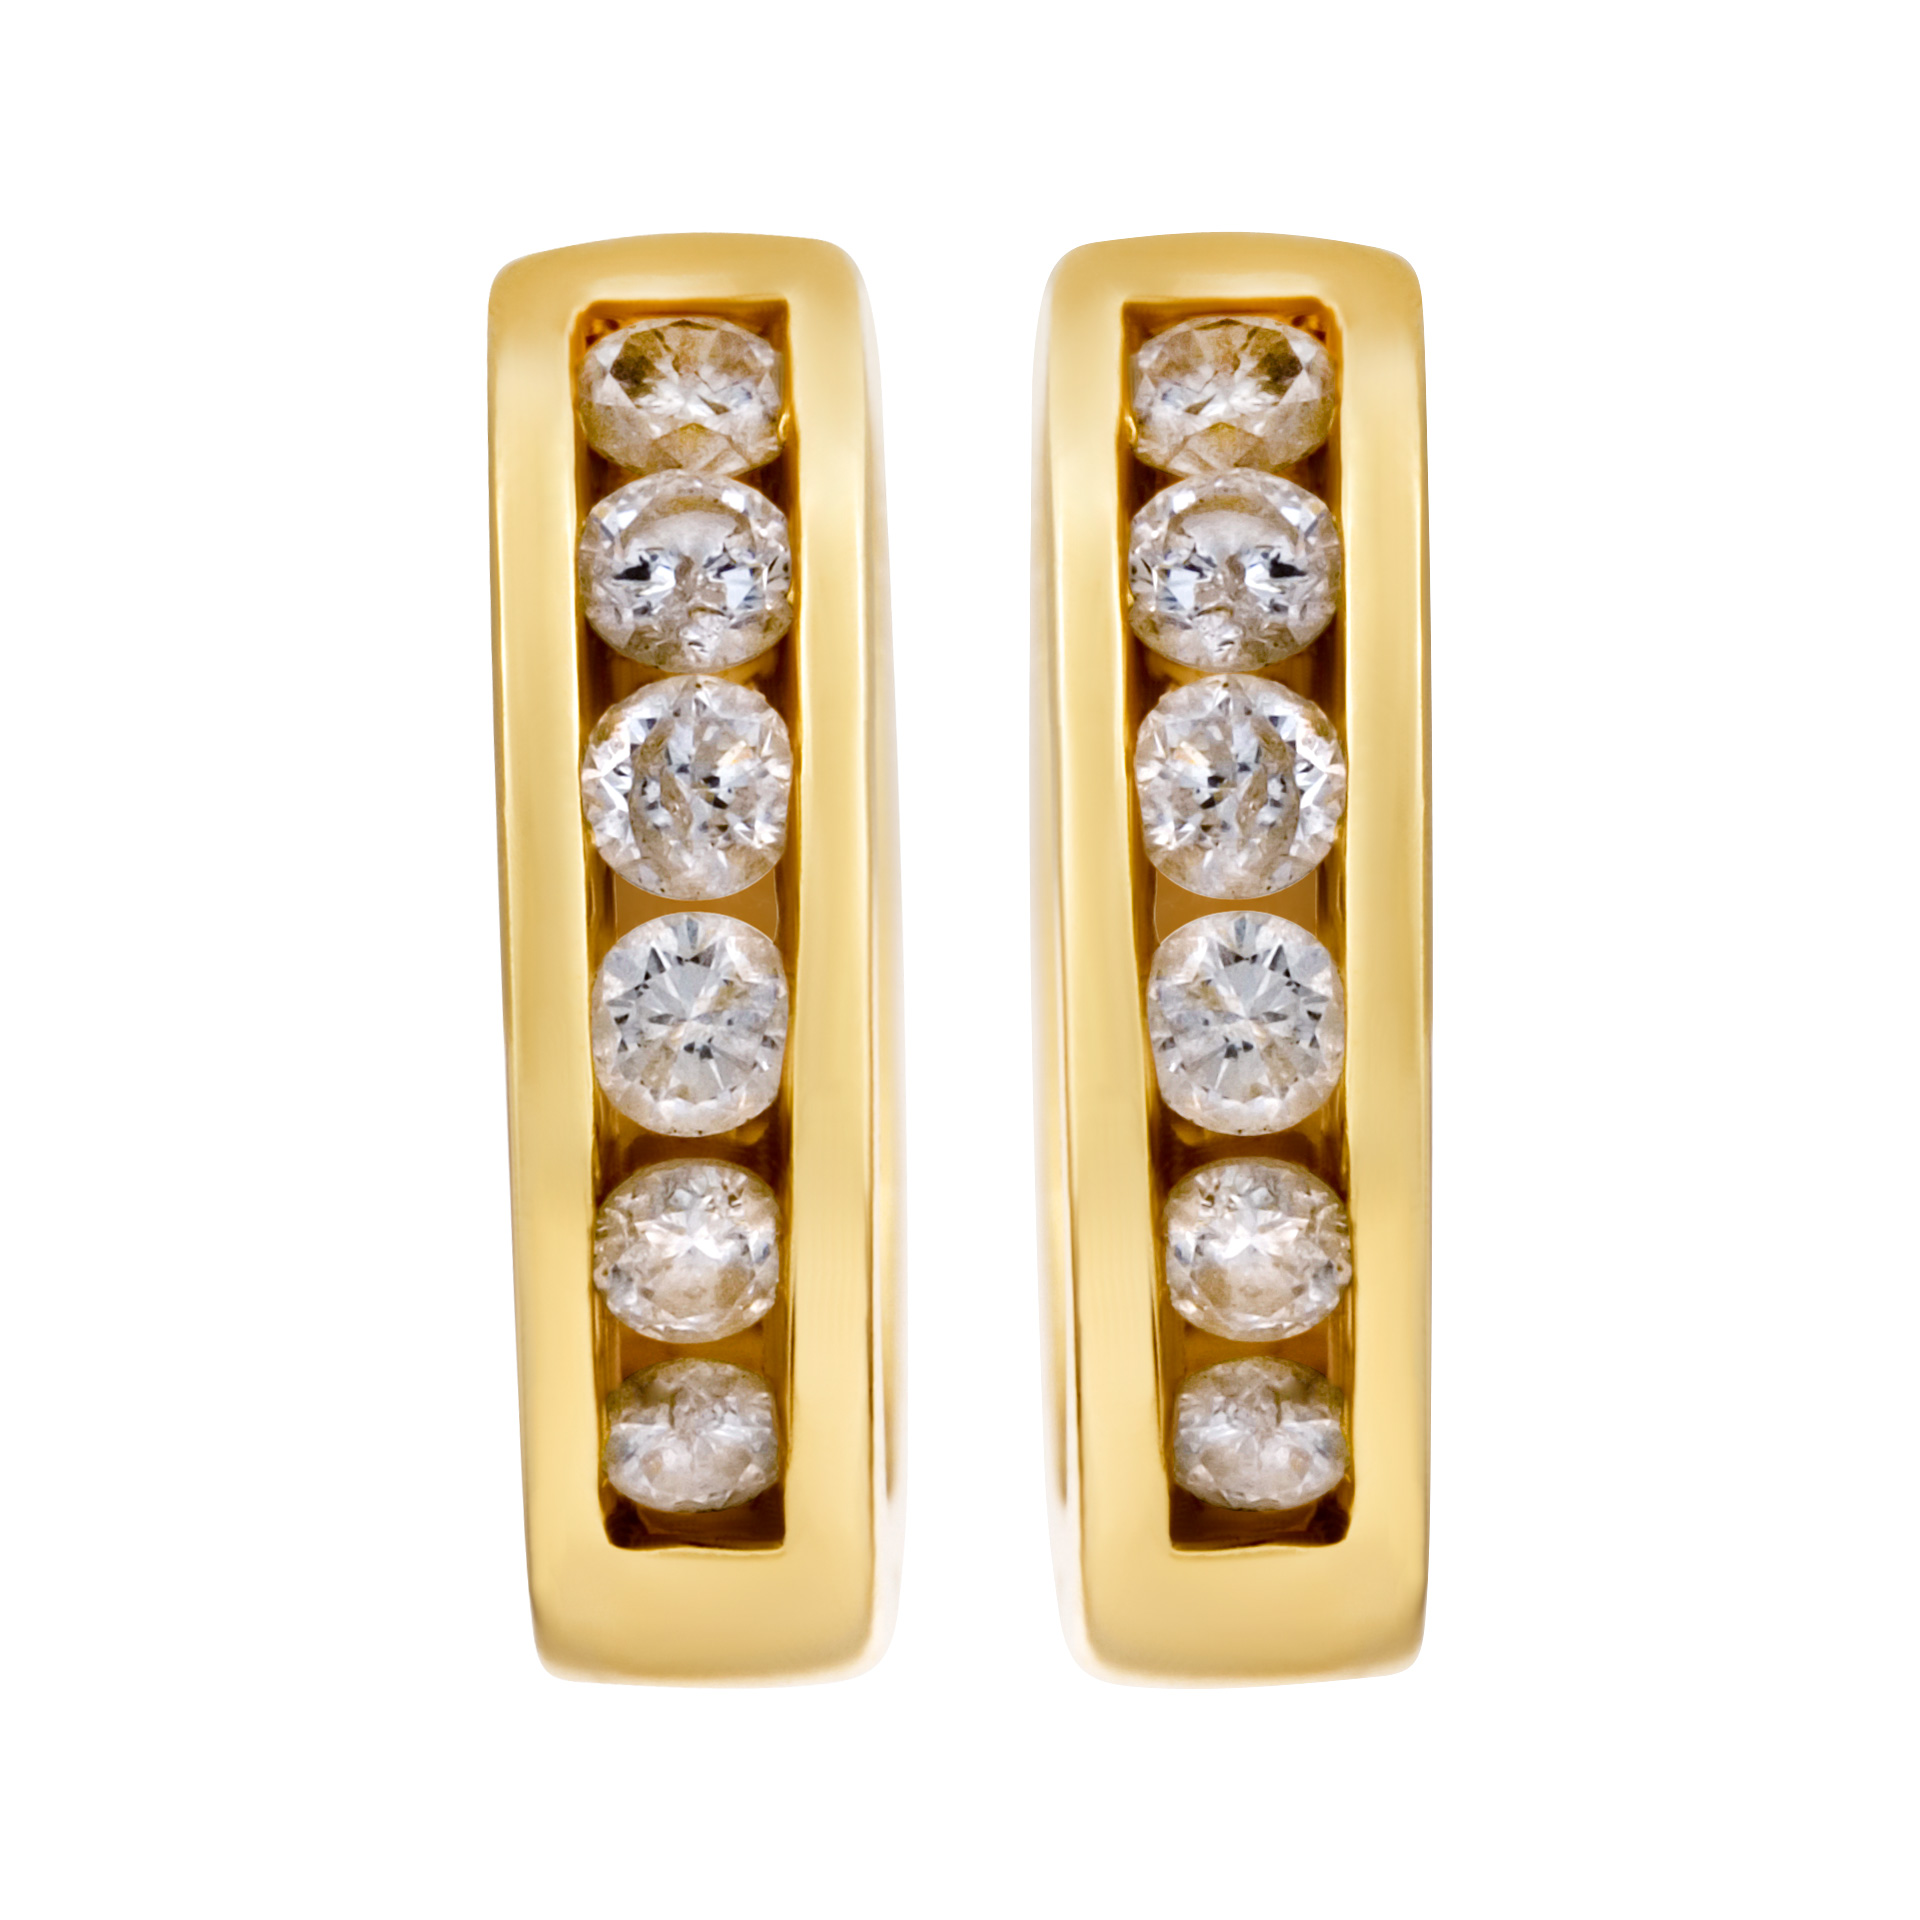 Diamond hoop earrings in 14k